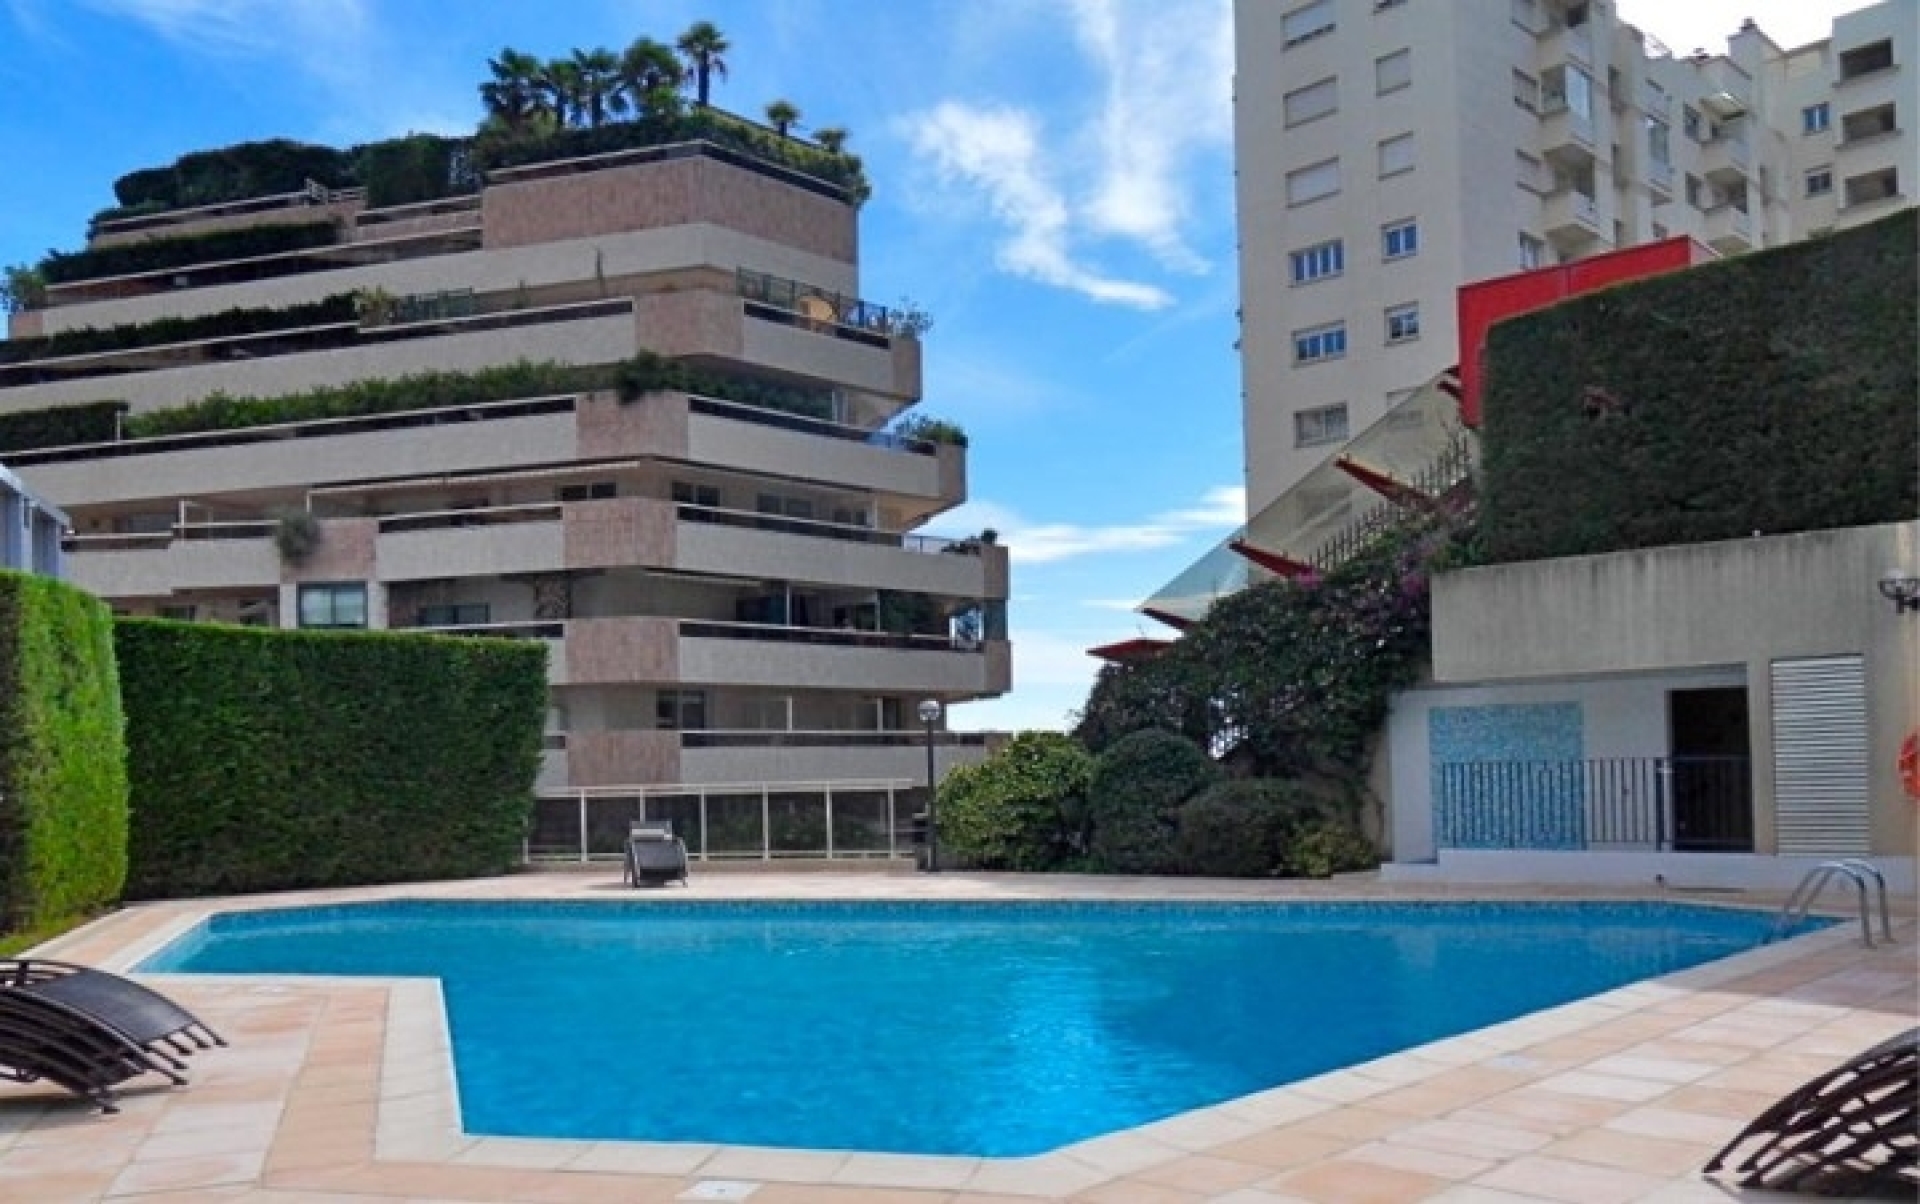 Dotta Appartement de 5 pieces a vendre - PATIO PALACE - Jardin Exotique - Monaco - imgpiscine